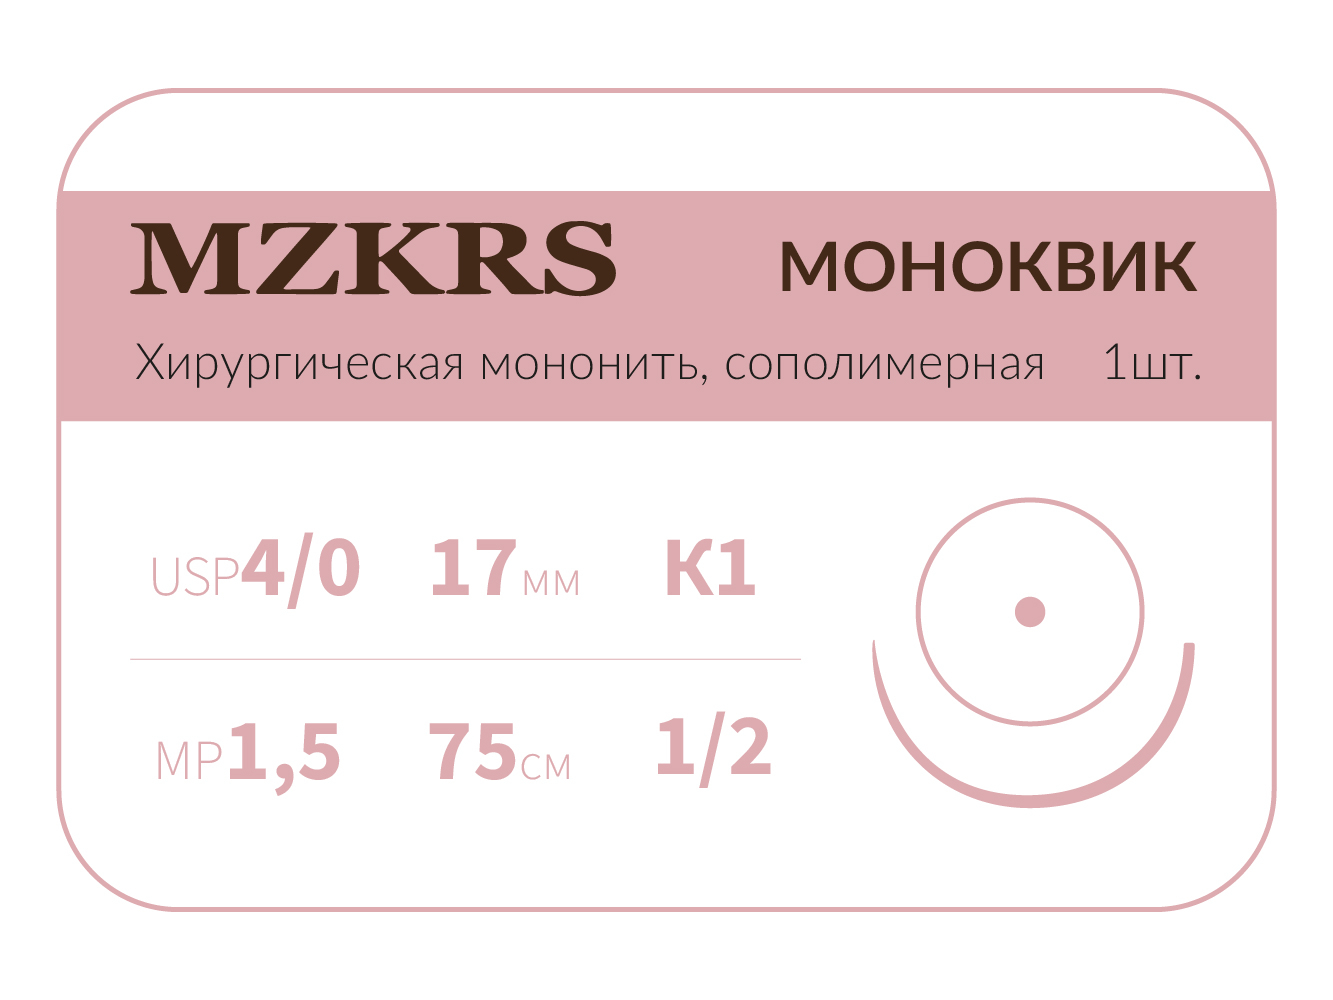 1712К1 Premium-4/0 (1,5)75 МОНК МОНОКВИК хирургическая мононить, сополимерная, колющая игла, MZKRS (Россия)